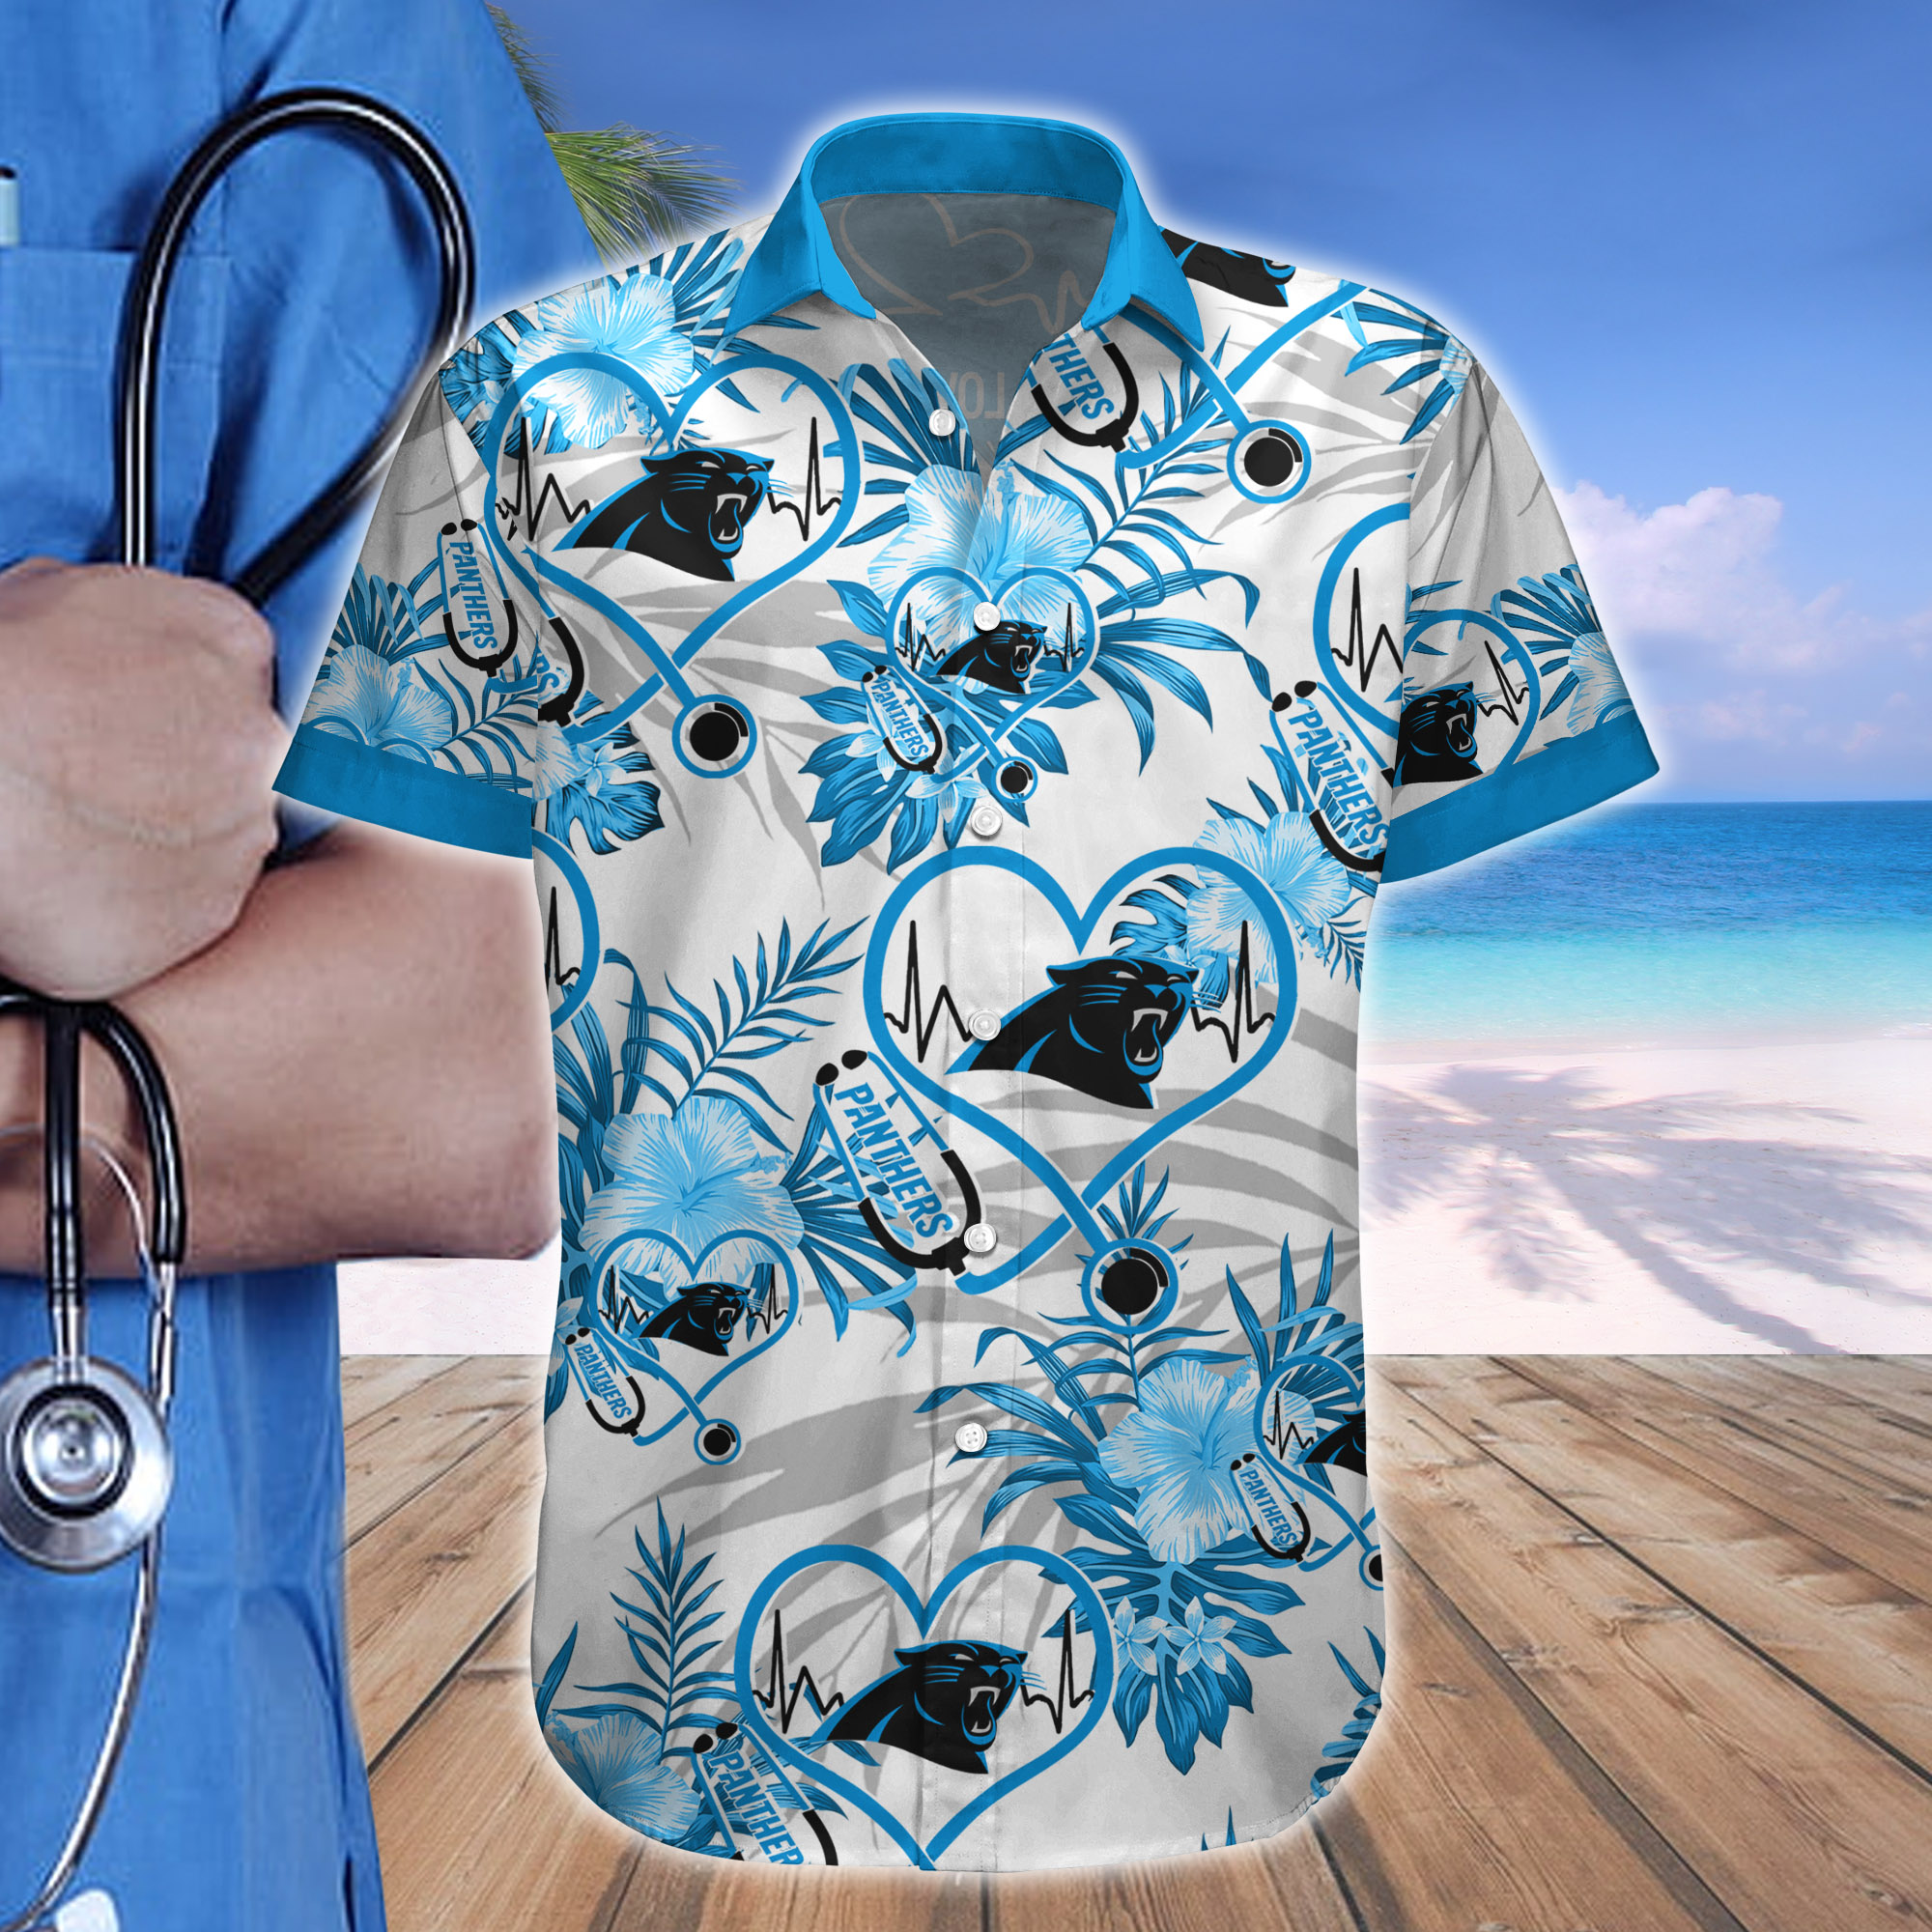 Nurse Love Carolina Panthers Hawaiian shirt